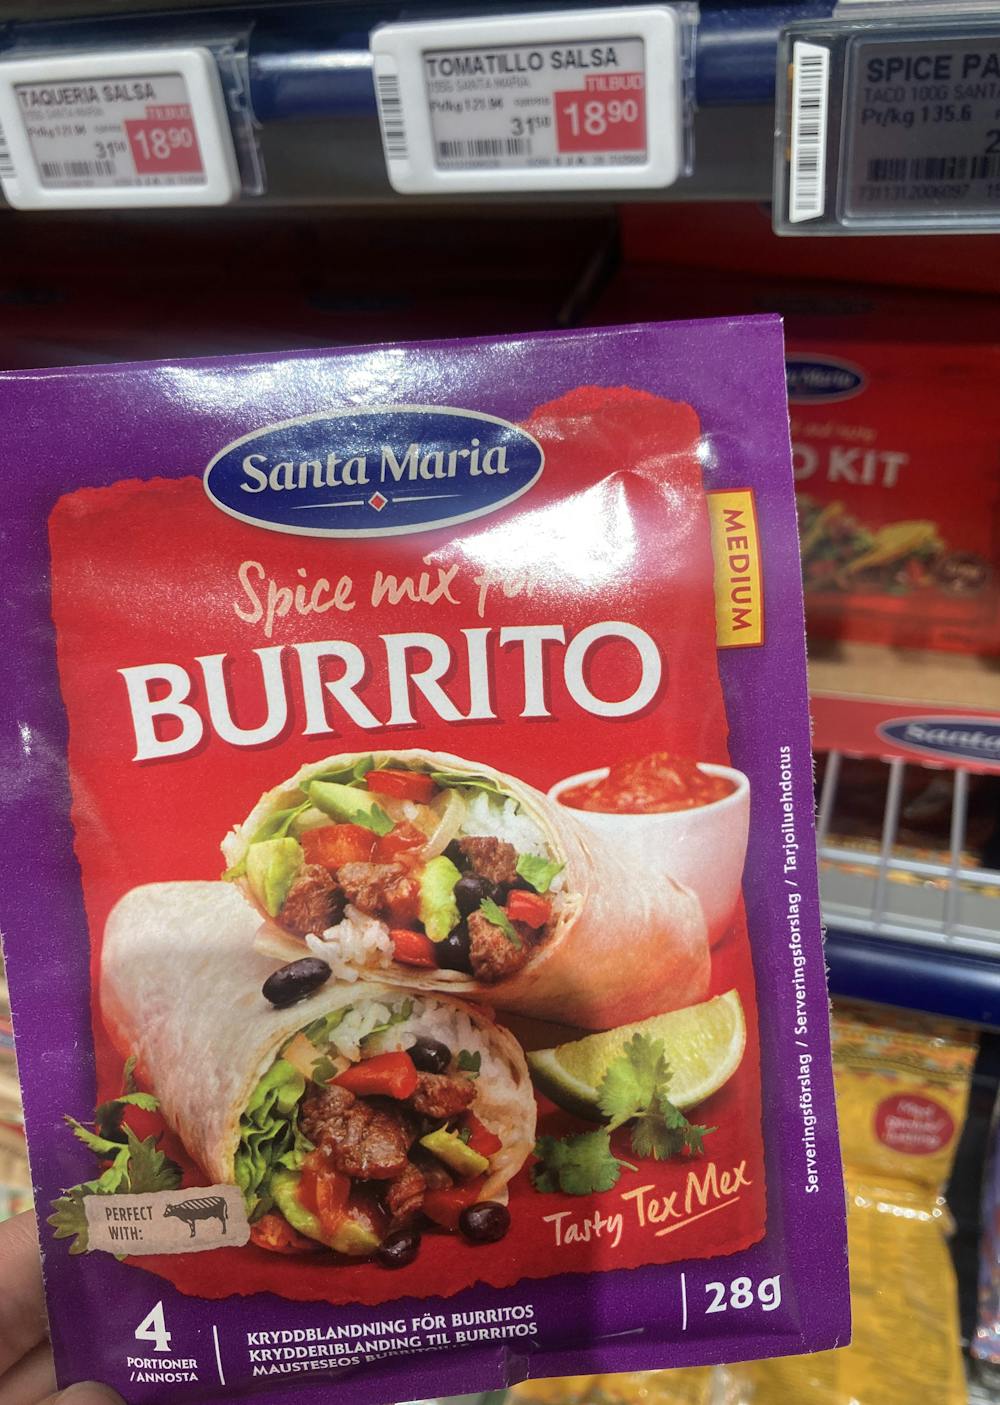 Spice mix for burrito, Santa Maria